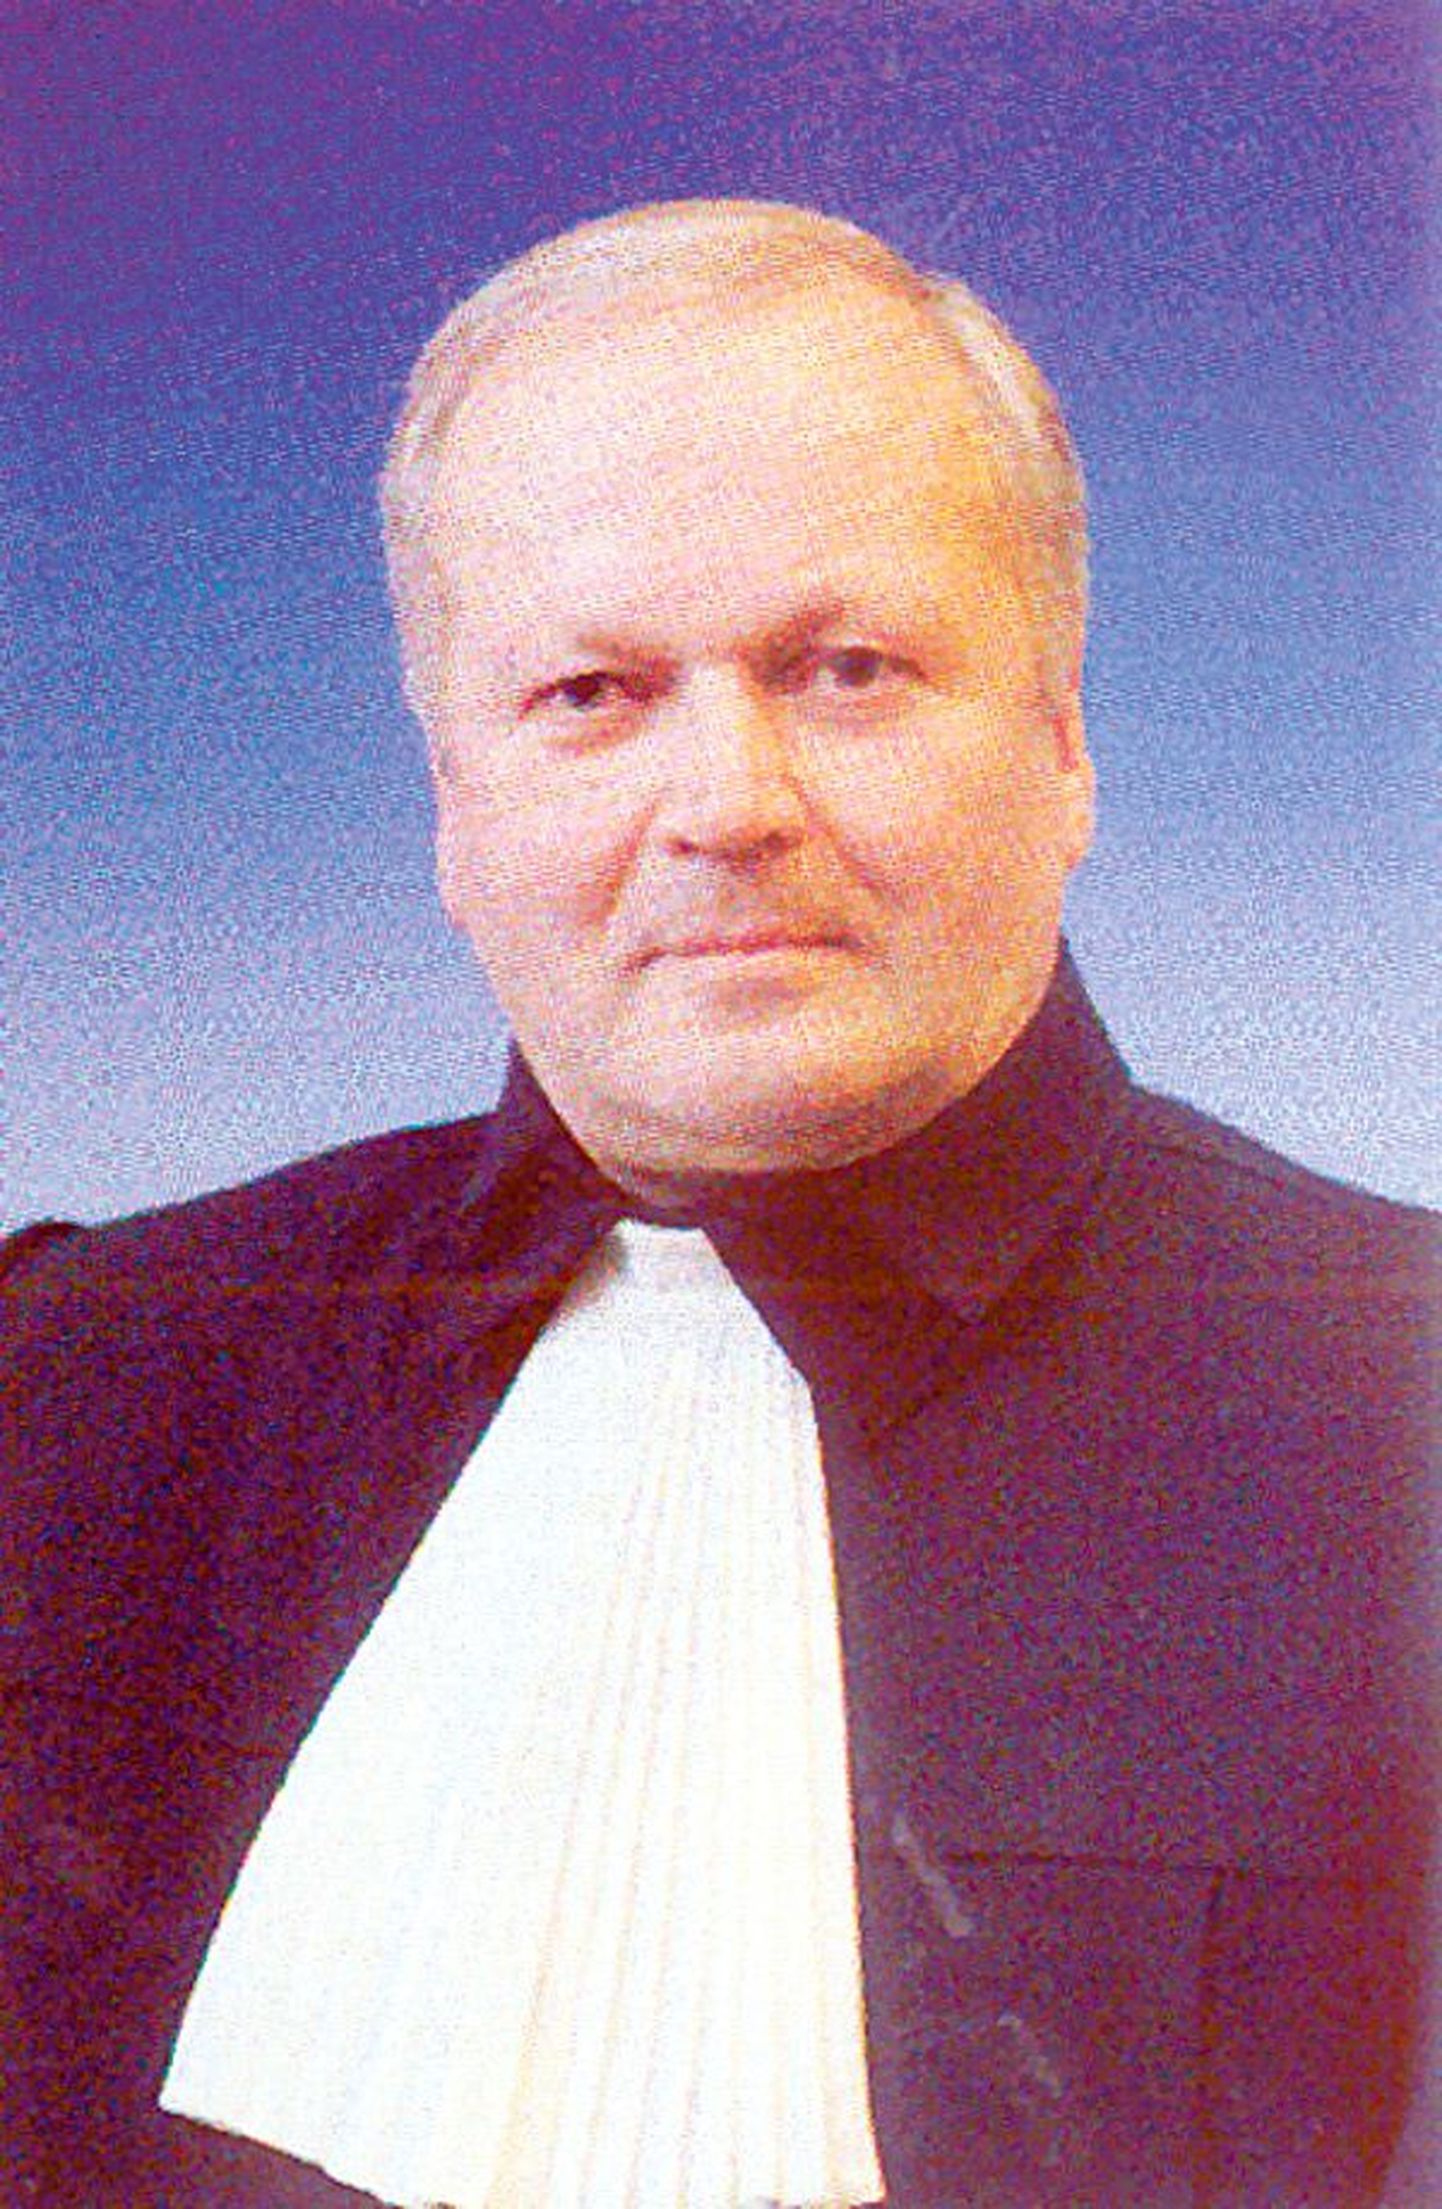 Отстраненный от должности за невыполнение своих обязанностей судья Айвар Коппель.